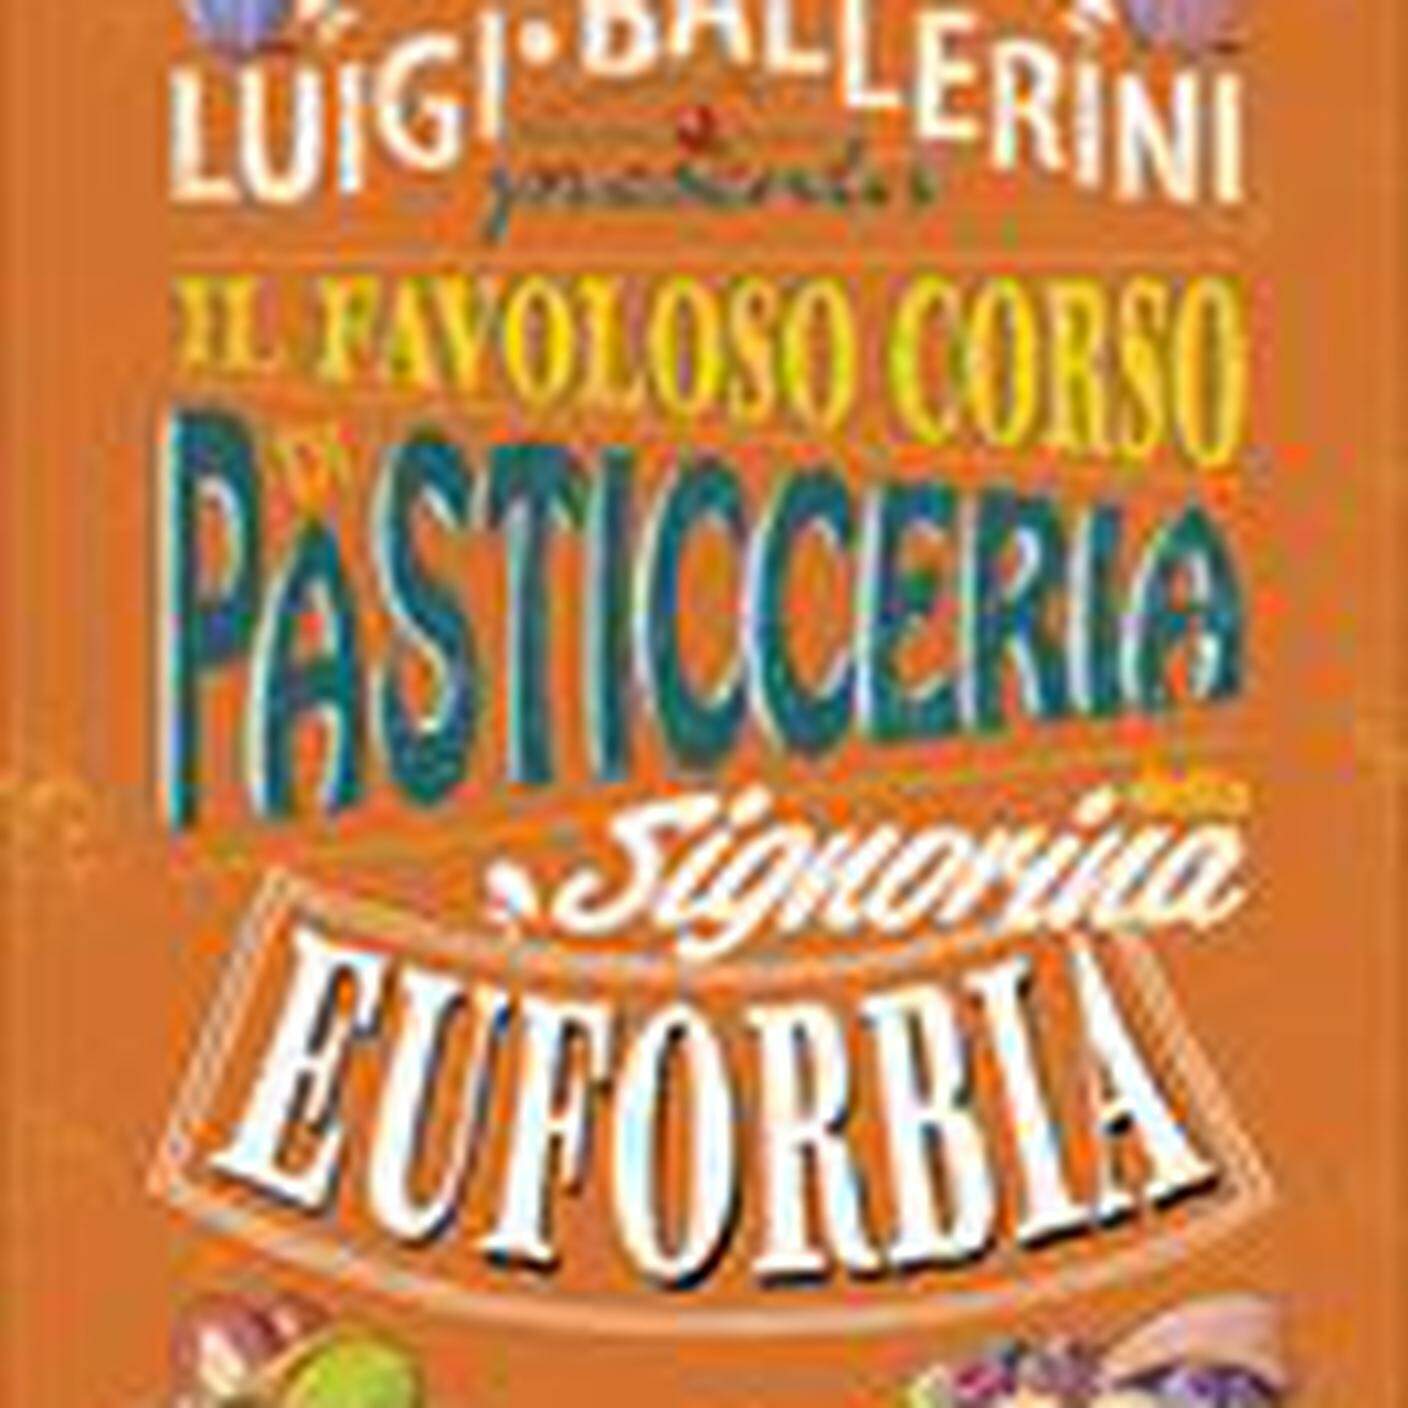 "Il favoloso corso di pasticceria della Signorina Euforbia" di Luigi Ballerini, Edizioni San Paolo (dettaglio di copertina)